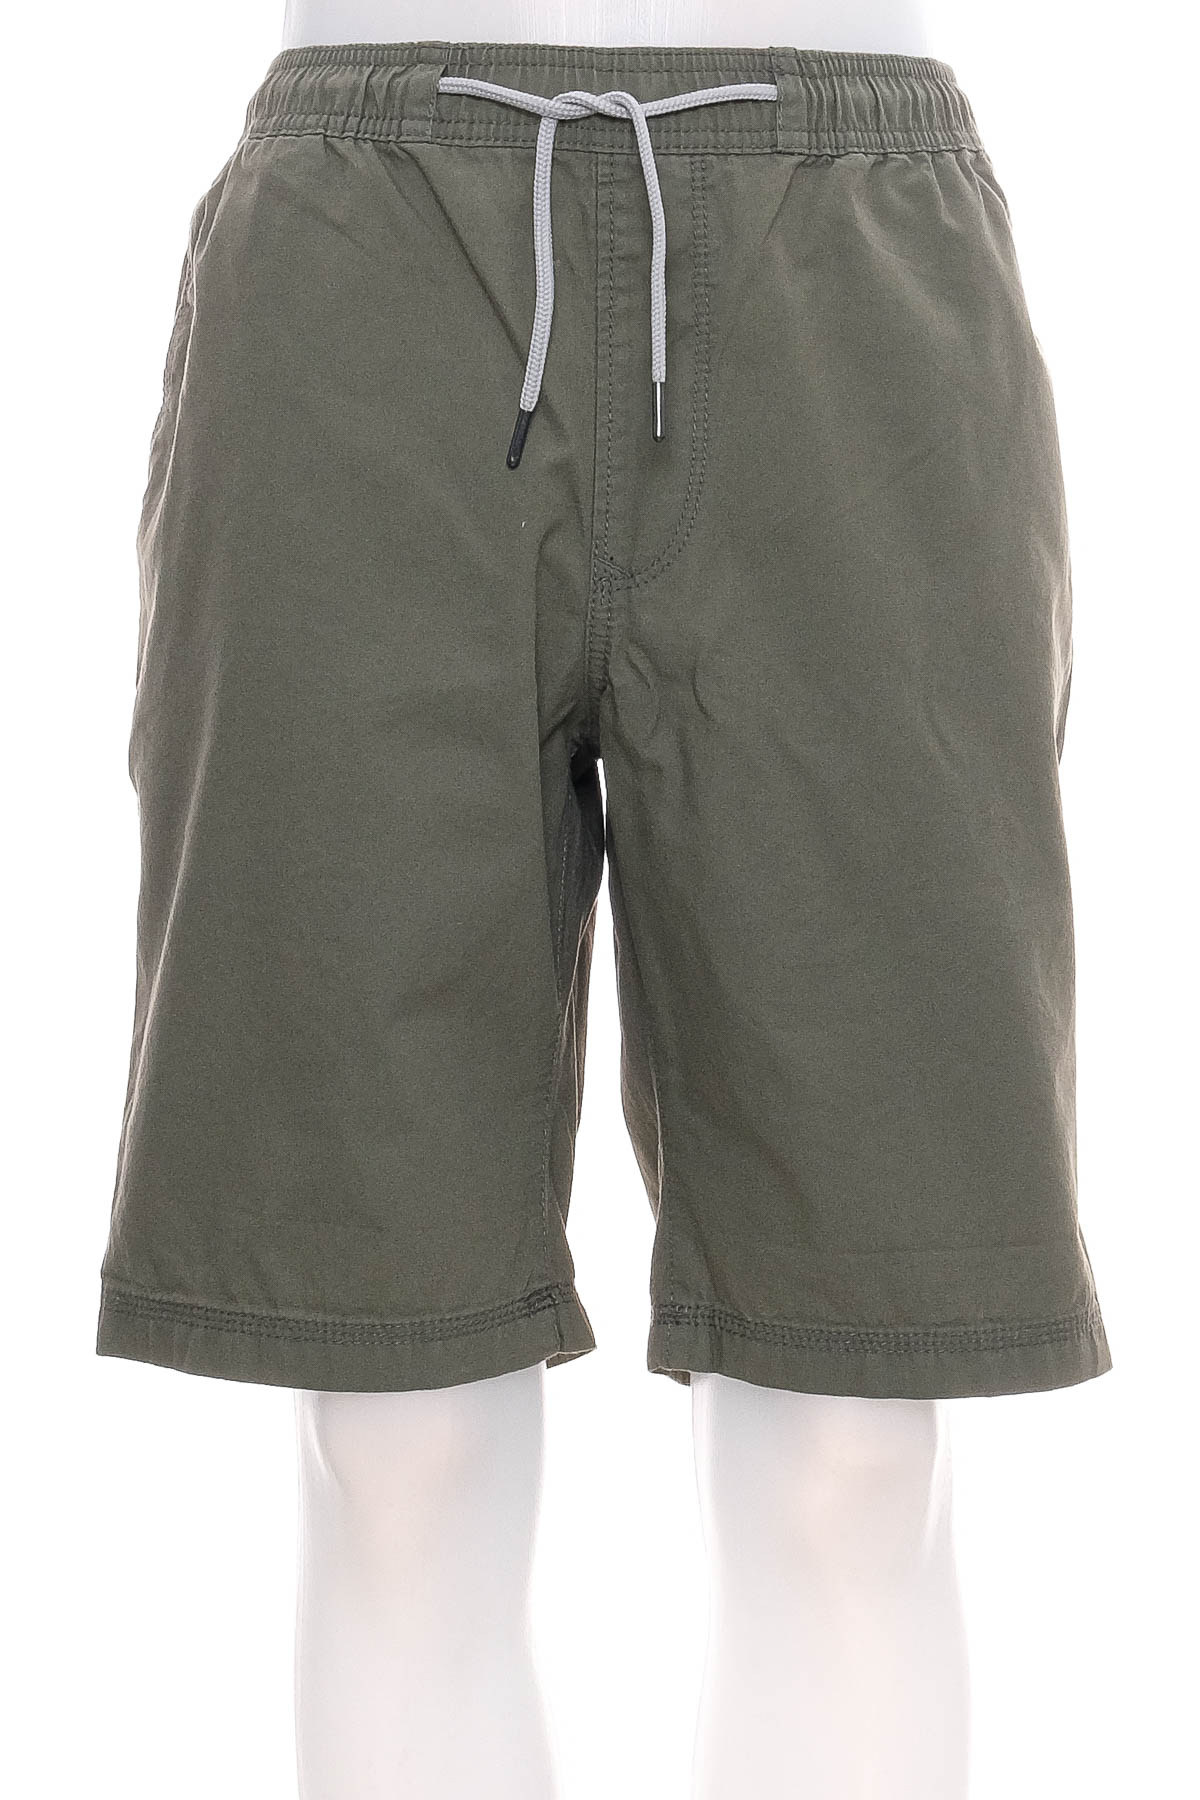 Men's shorts - C&A - 0